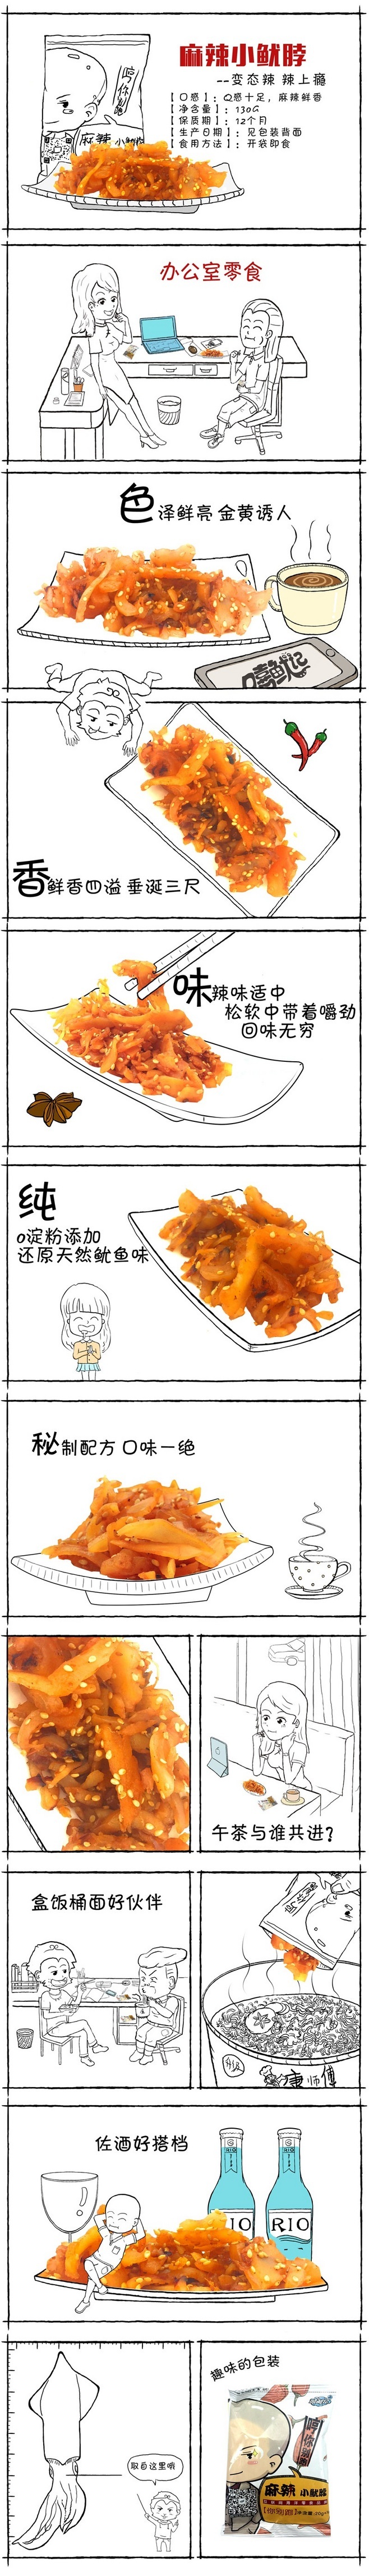 淘宝美工yan燕子手绘详情页食品作品